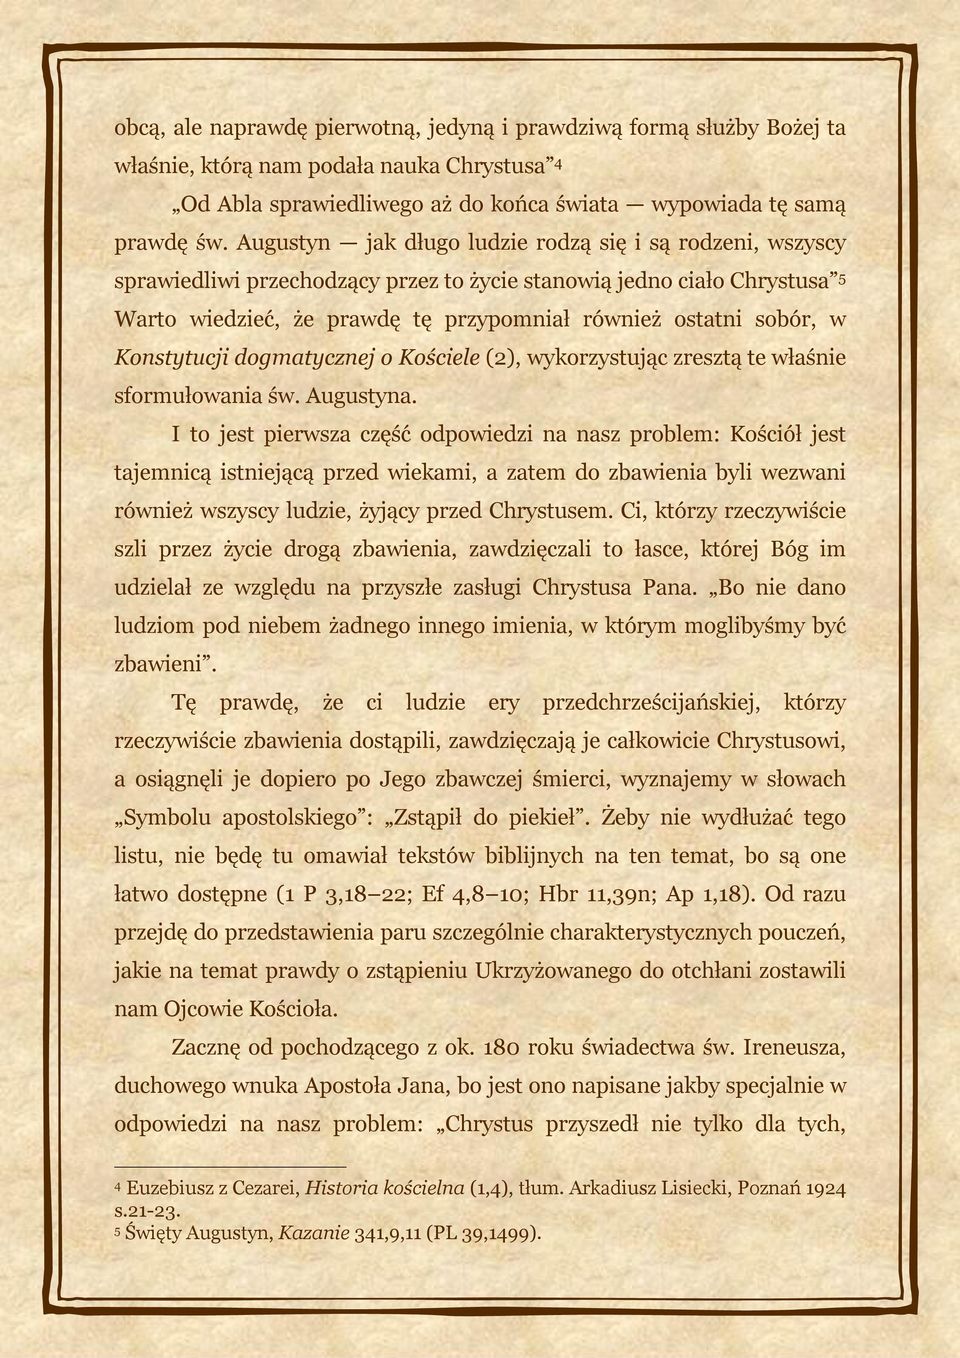 Konstytucji dogmatycznej o Kościele (2), wykorzystując zresztą te właśnie sformułowania św. Augustyna.